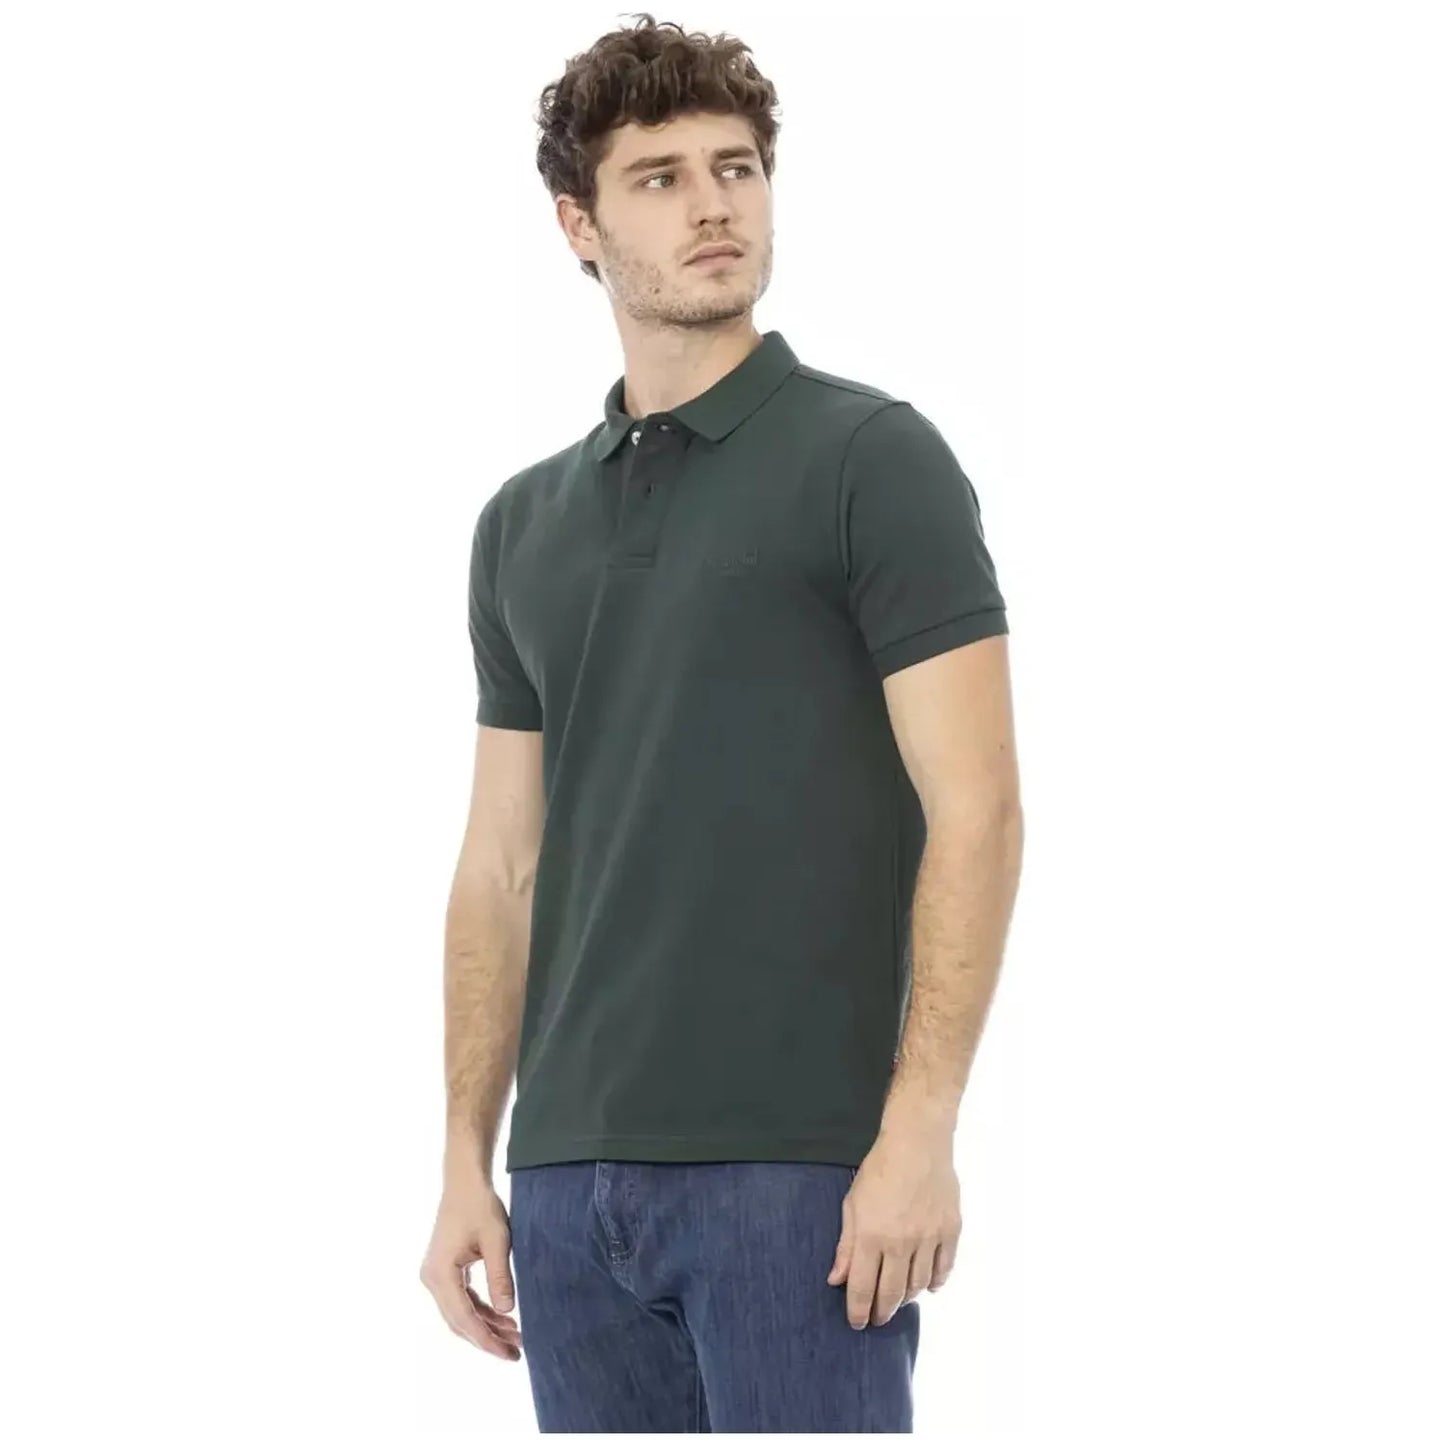 Baldinini Trend Chic Embroidered Cotton Polo Shirt in Green green-cotton-polo-shirt-17